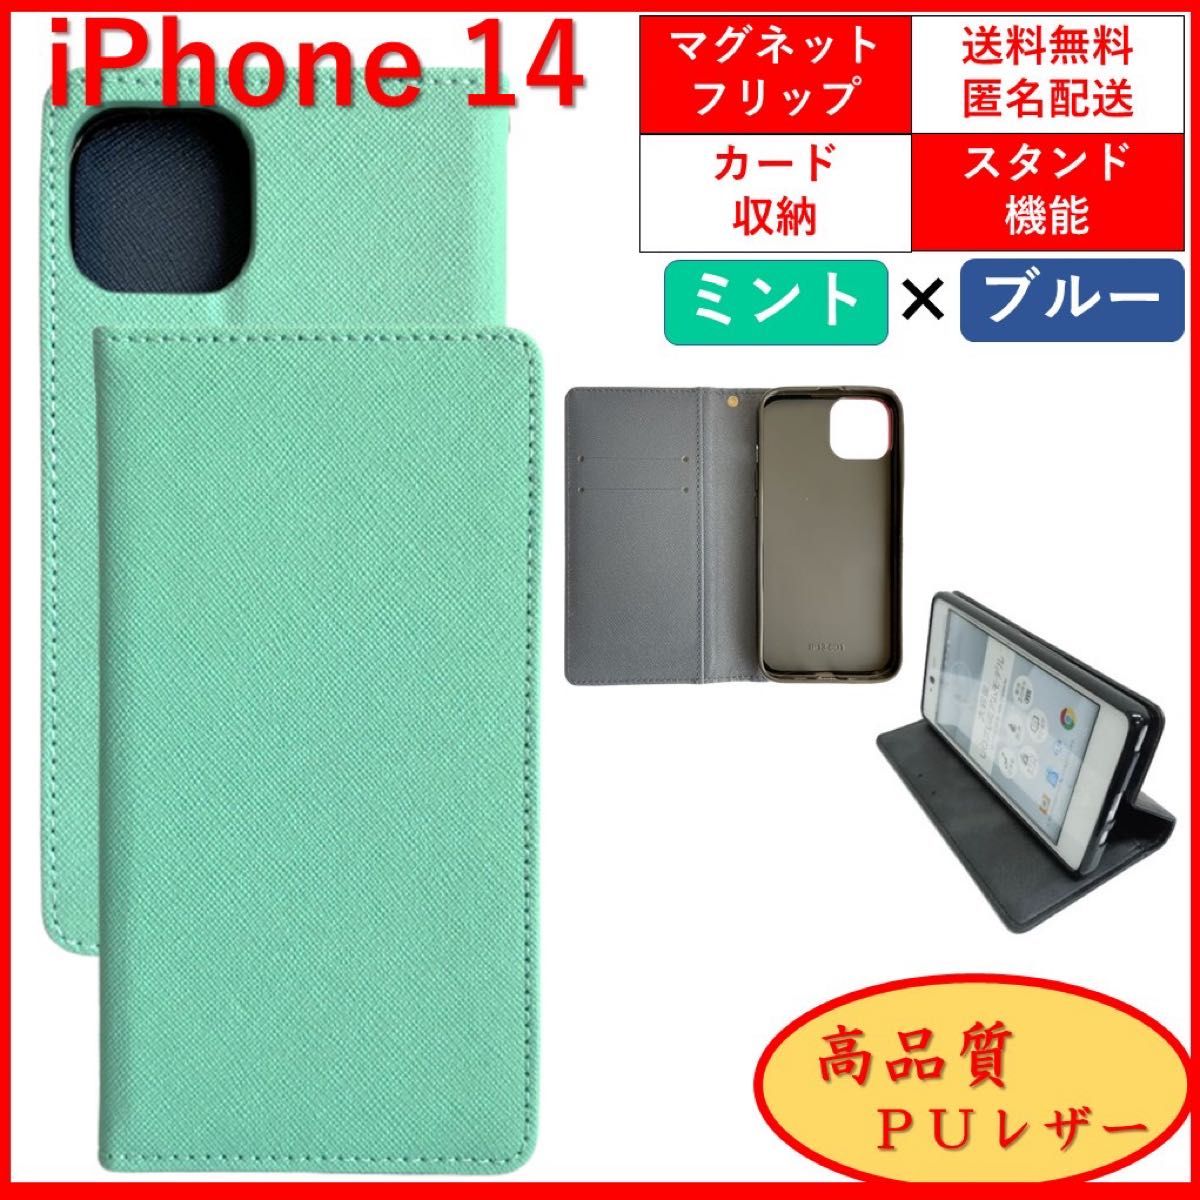 iPhone 14 アイフォン 手帳型 スマホカバー スマホケース レザー風 ミント ブルー カードポケット シンプル オシャレ